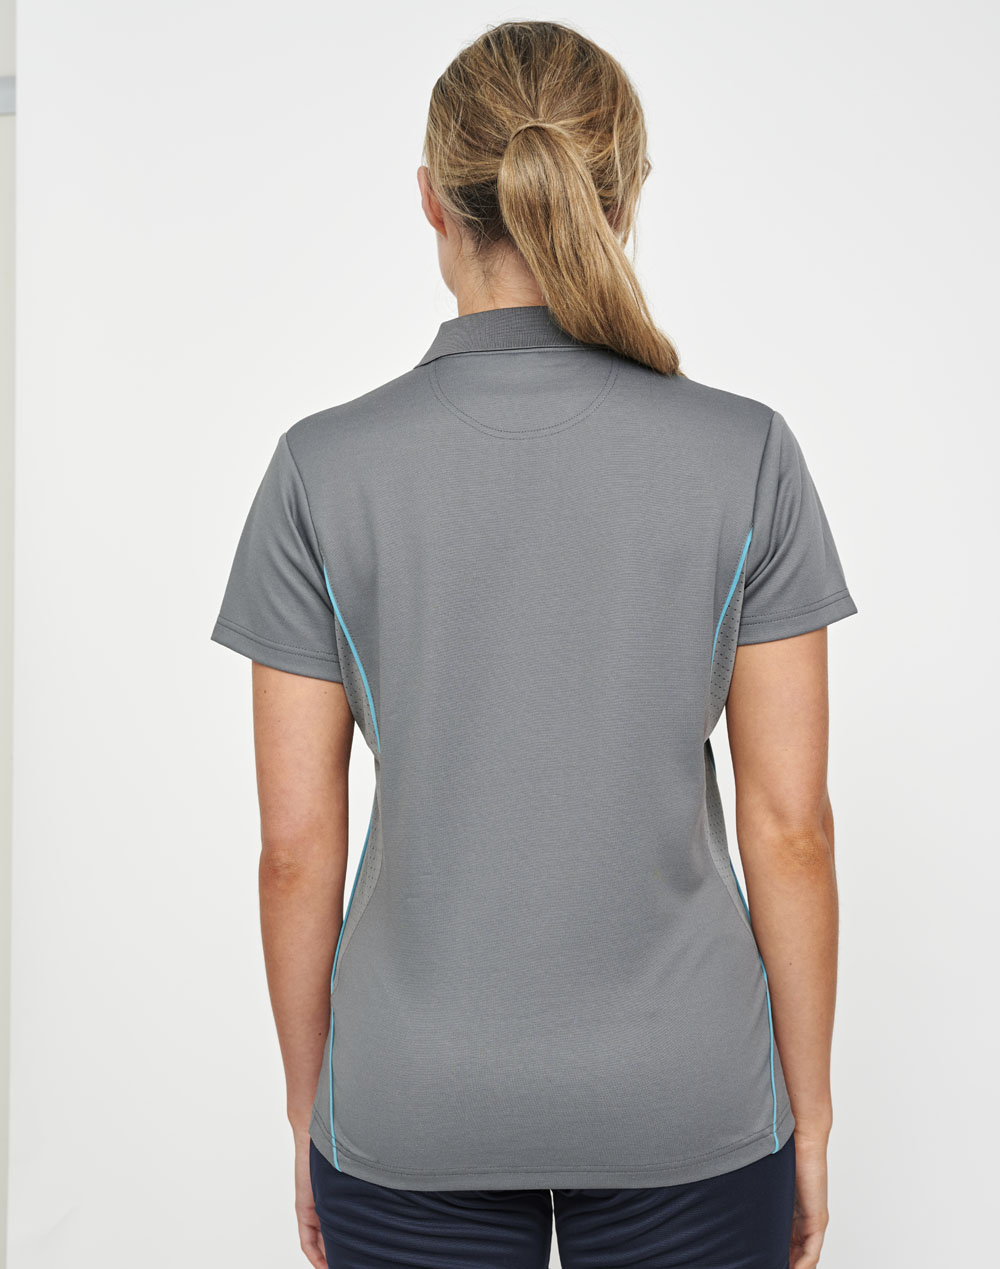 Custom Printed Ladies Poly Cotton Polo Shirts Online Perth Australia